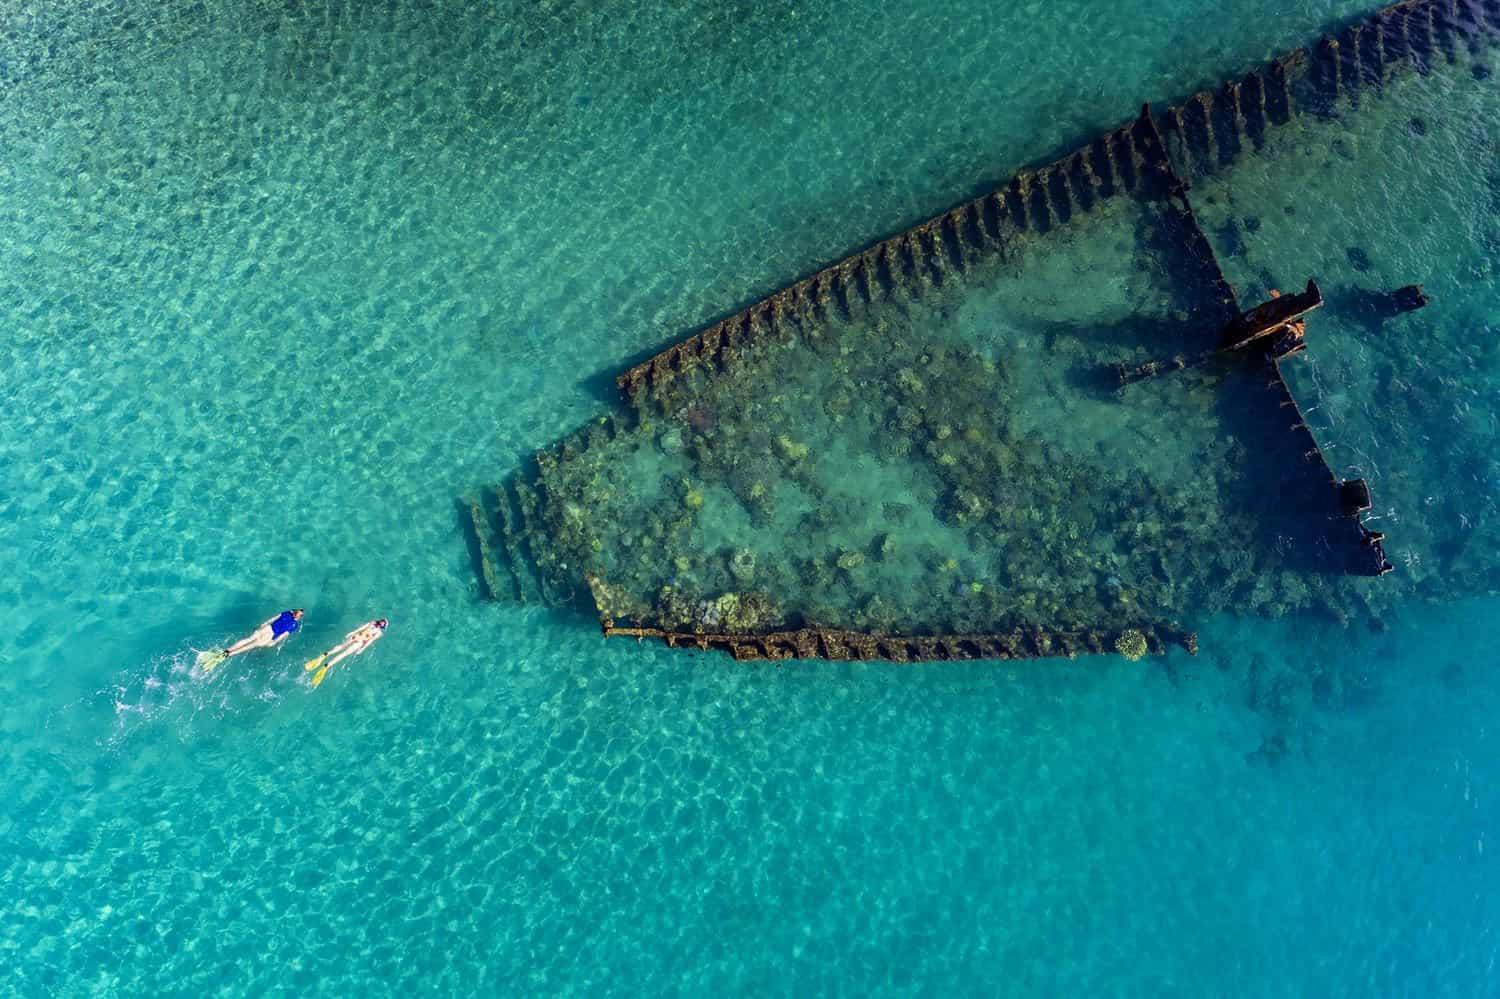 Solomon Islands wreck diving